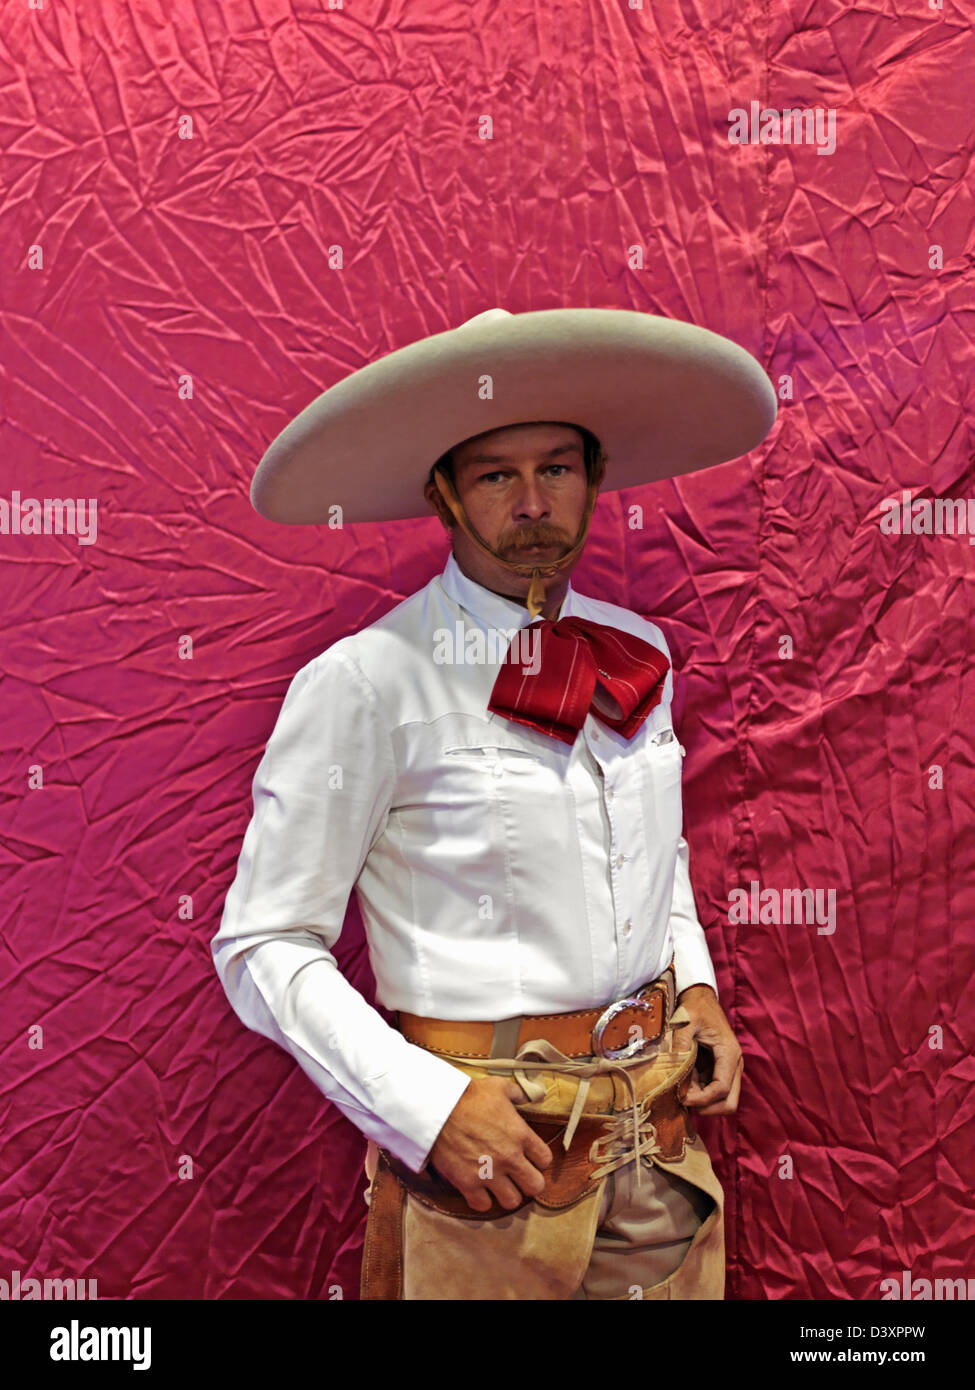 Gorro Vaquero Cowboy Fiestas Halloween Cosplay Estilo Cowboy